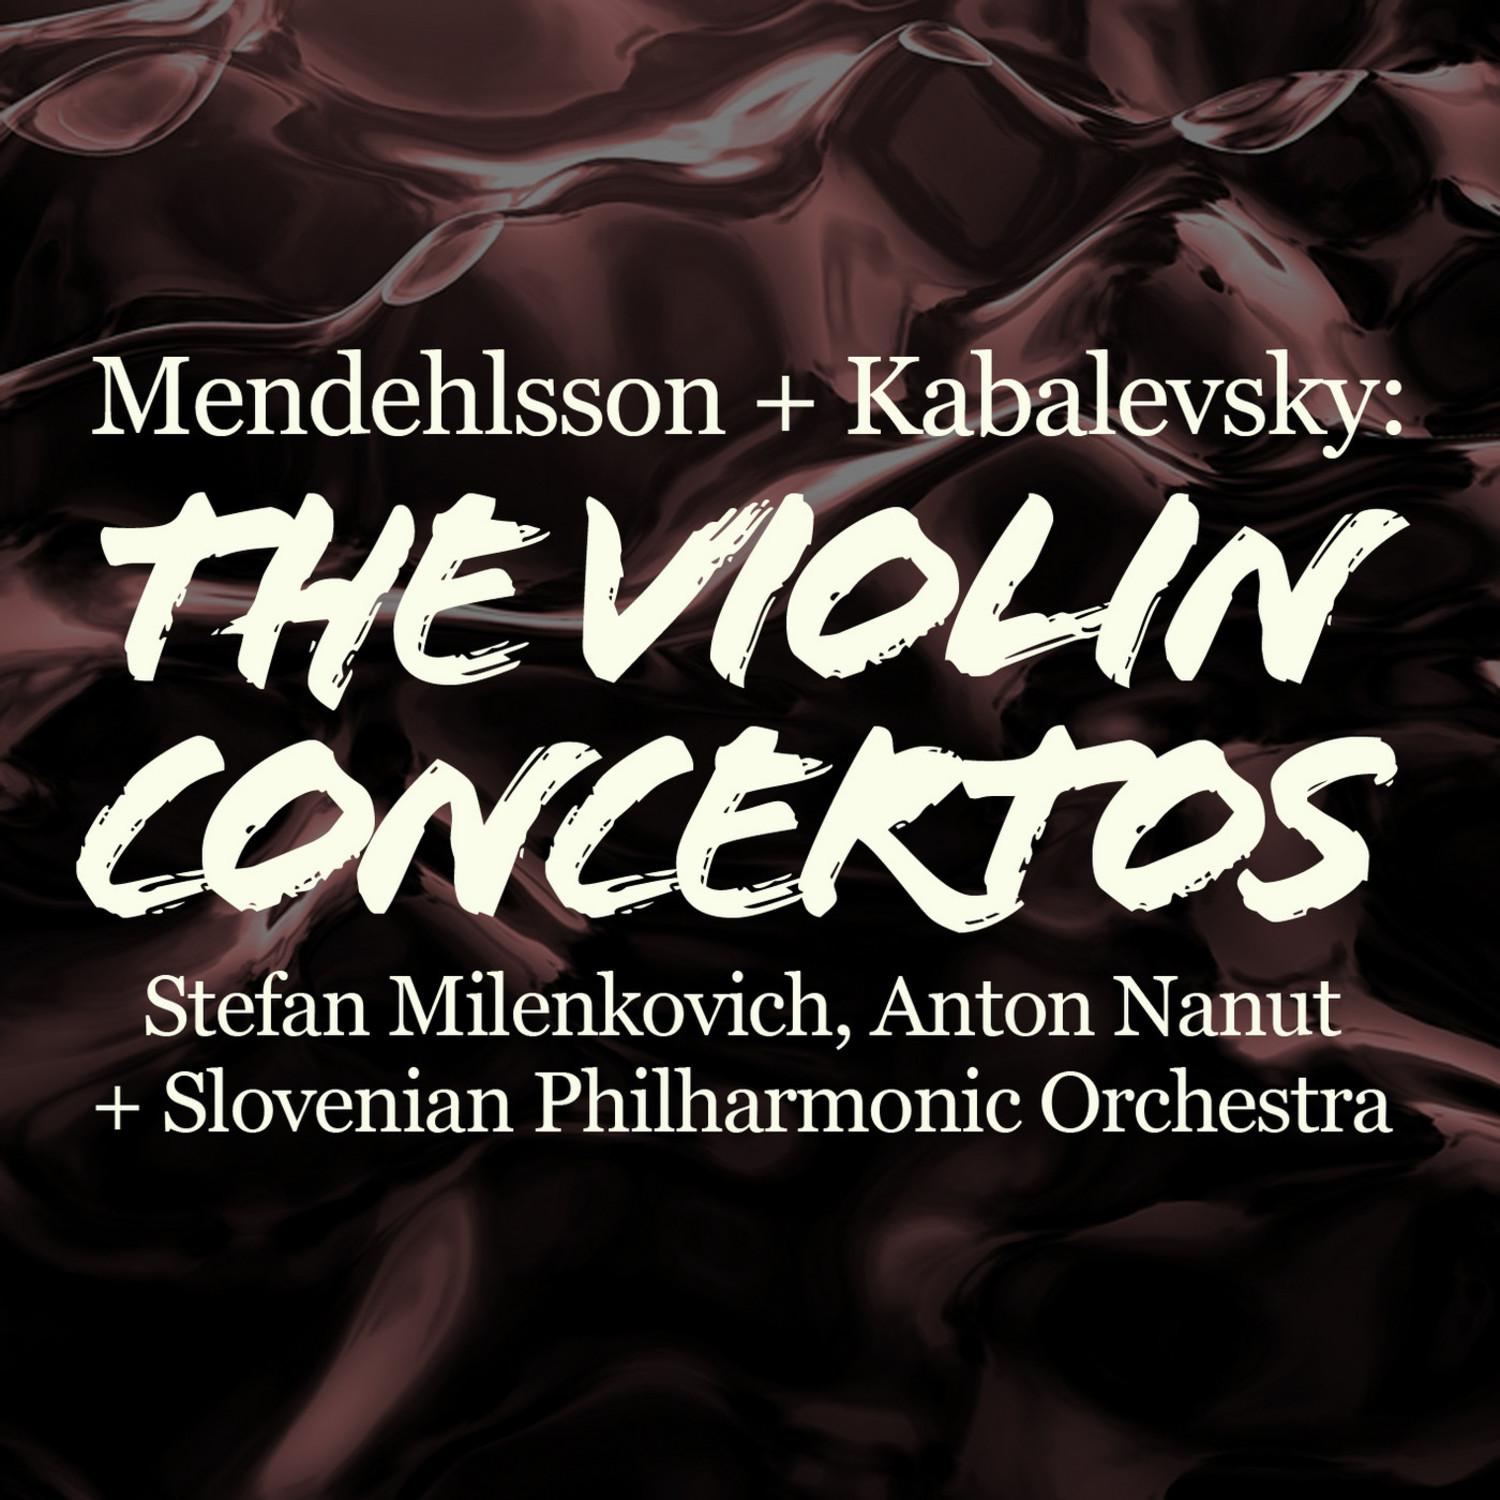 Concerto in E Minor for Violin and Orchestra, Op. 64: III. Allegretto non troppo - Allegro molto vivace